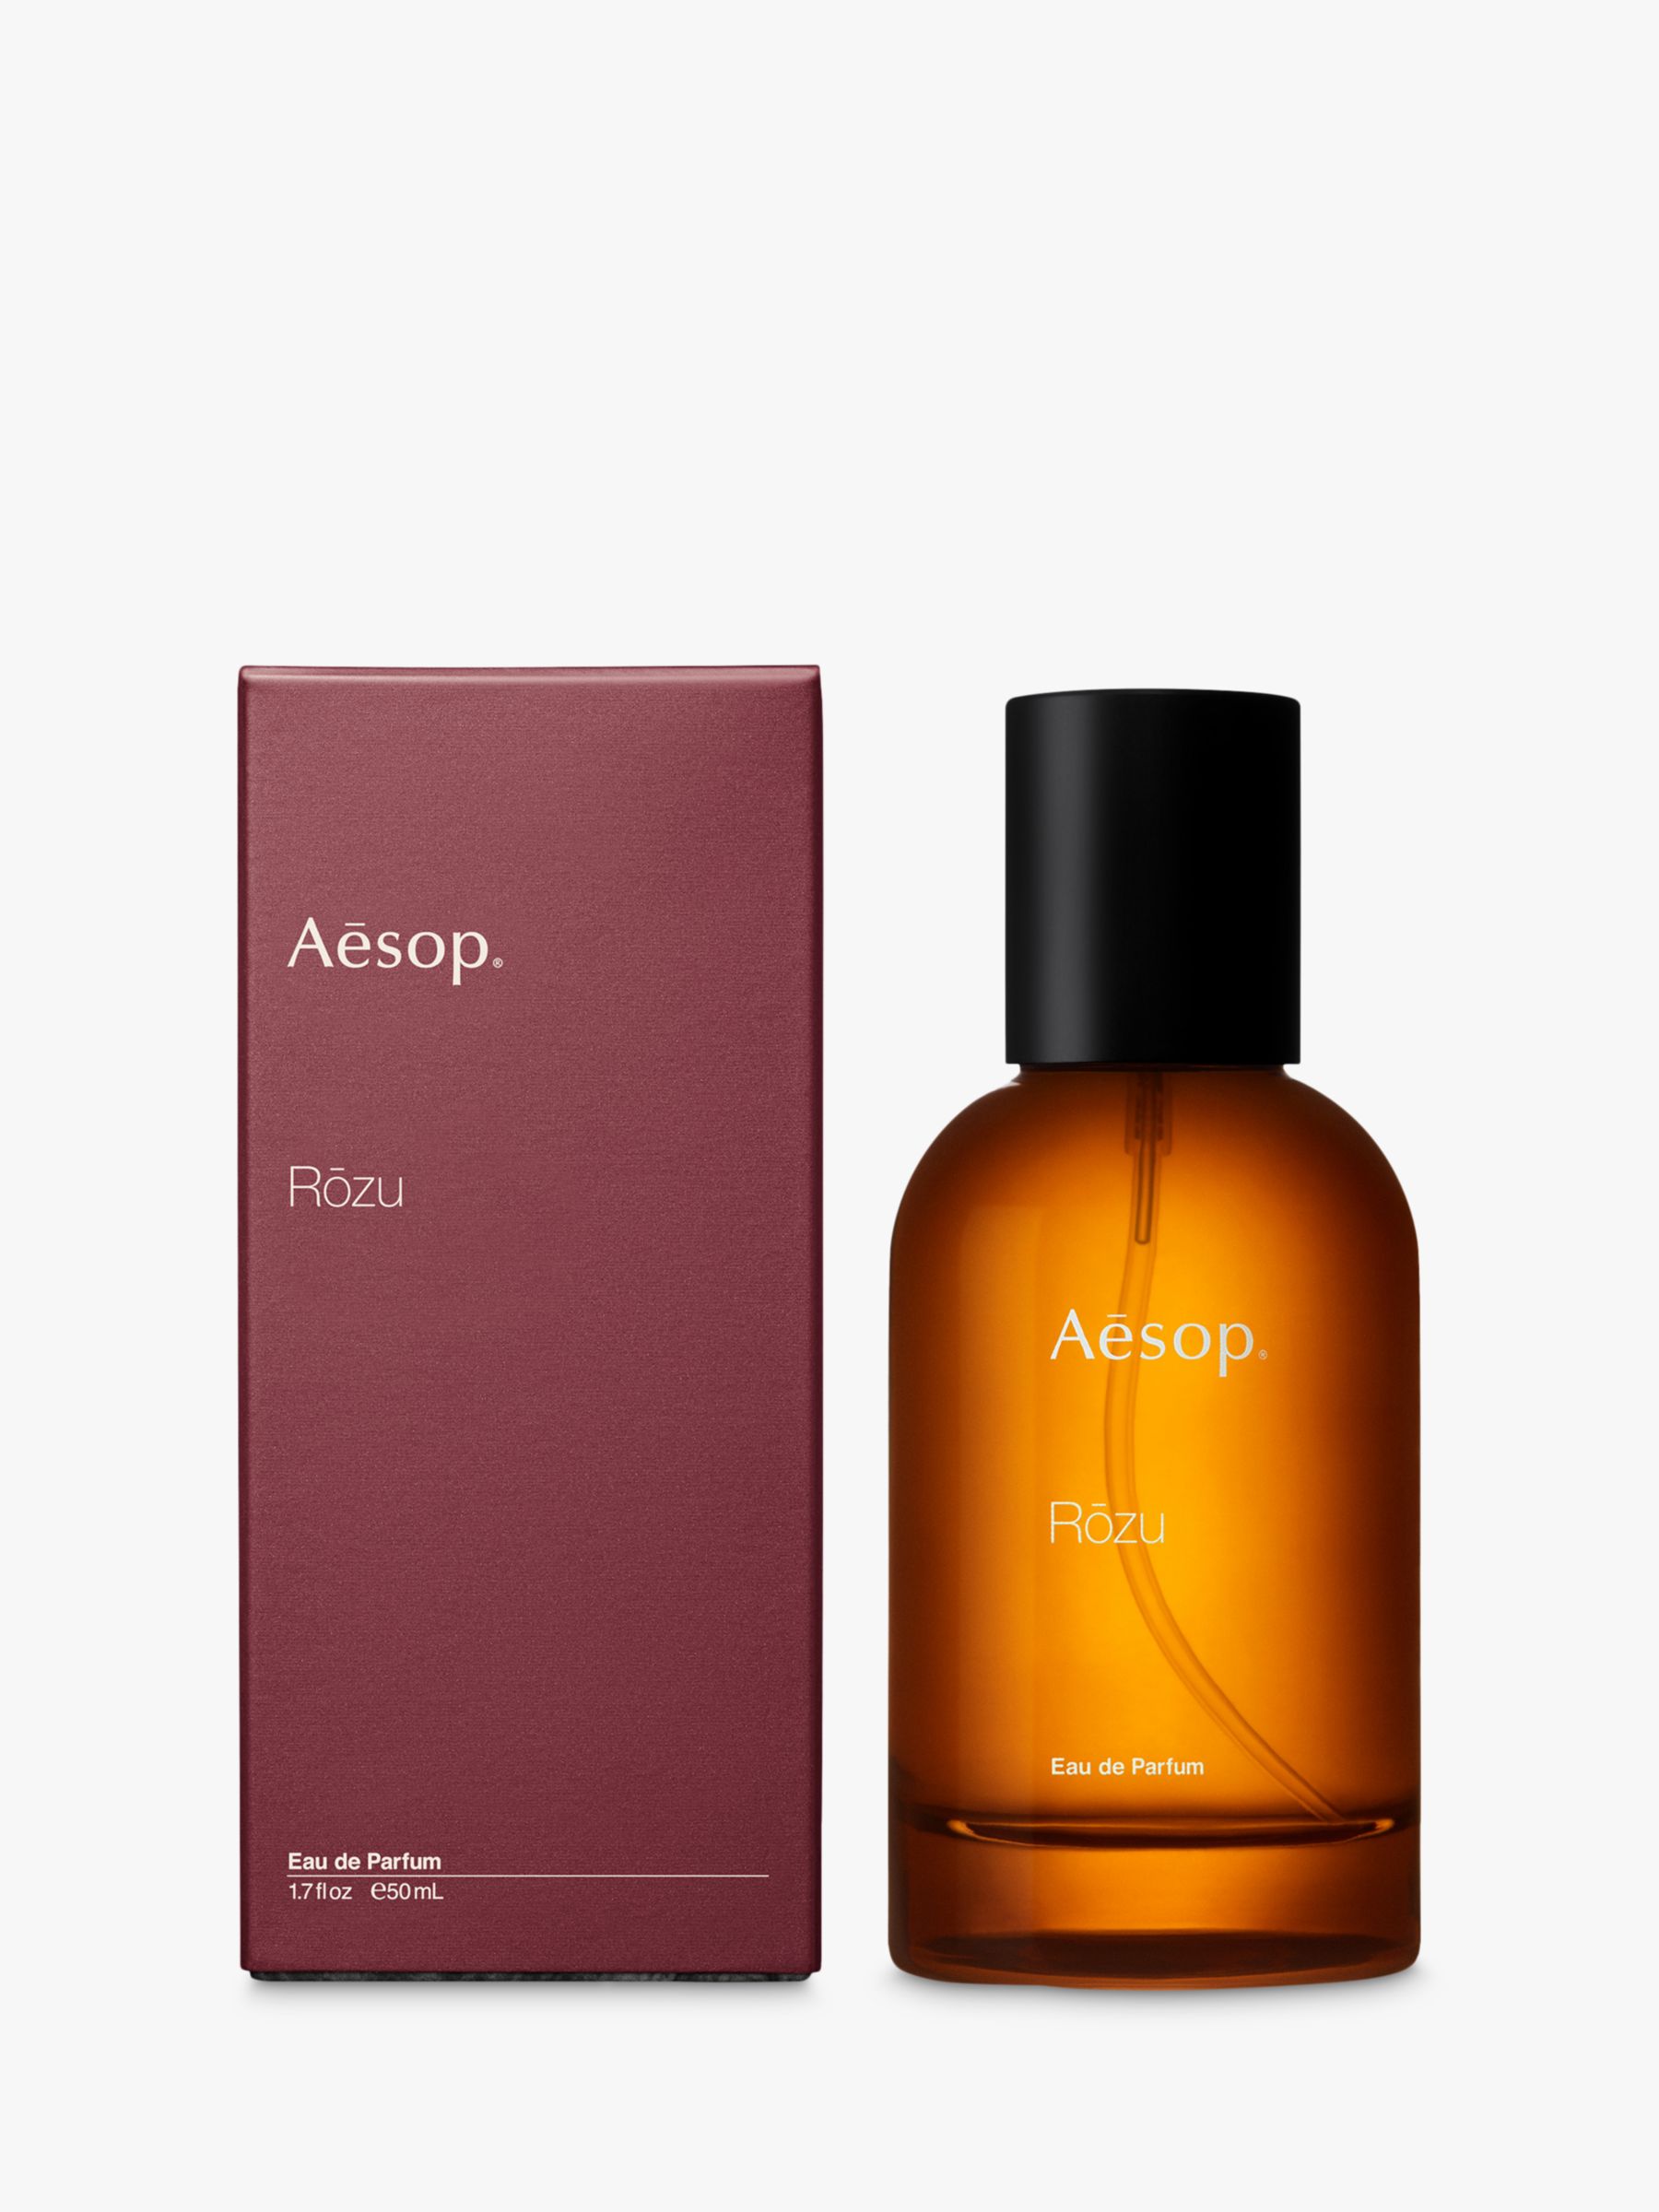 Aesop Rozu Eau de Parfum, 50ml